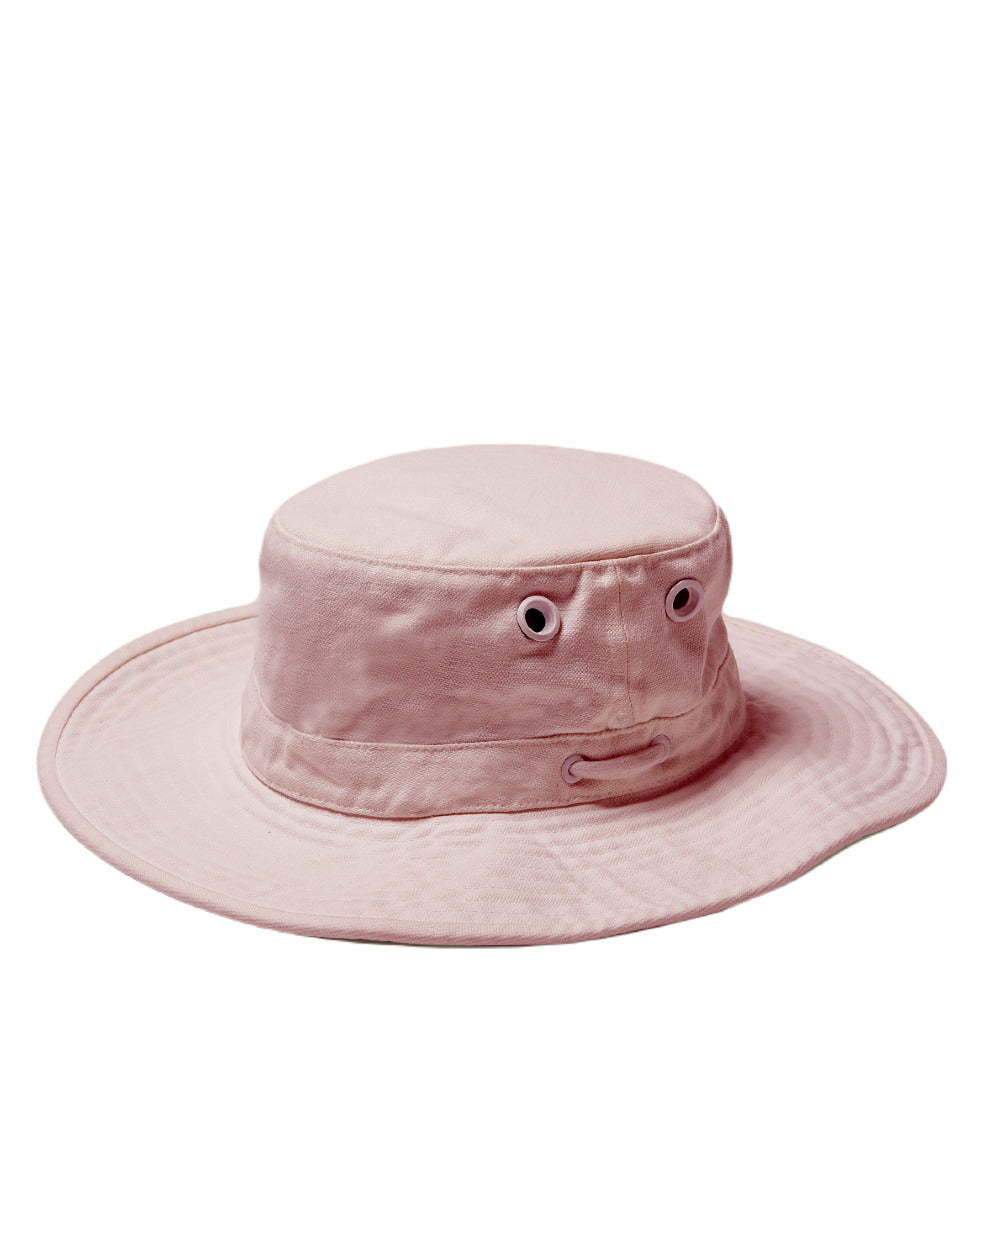 Light Pink Coloured Tilley Hat Wide Brim Wanderer On A White Background 